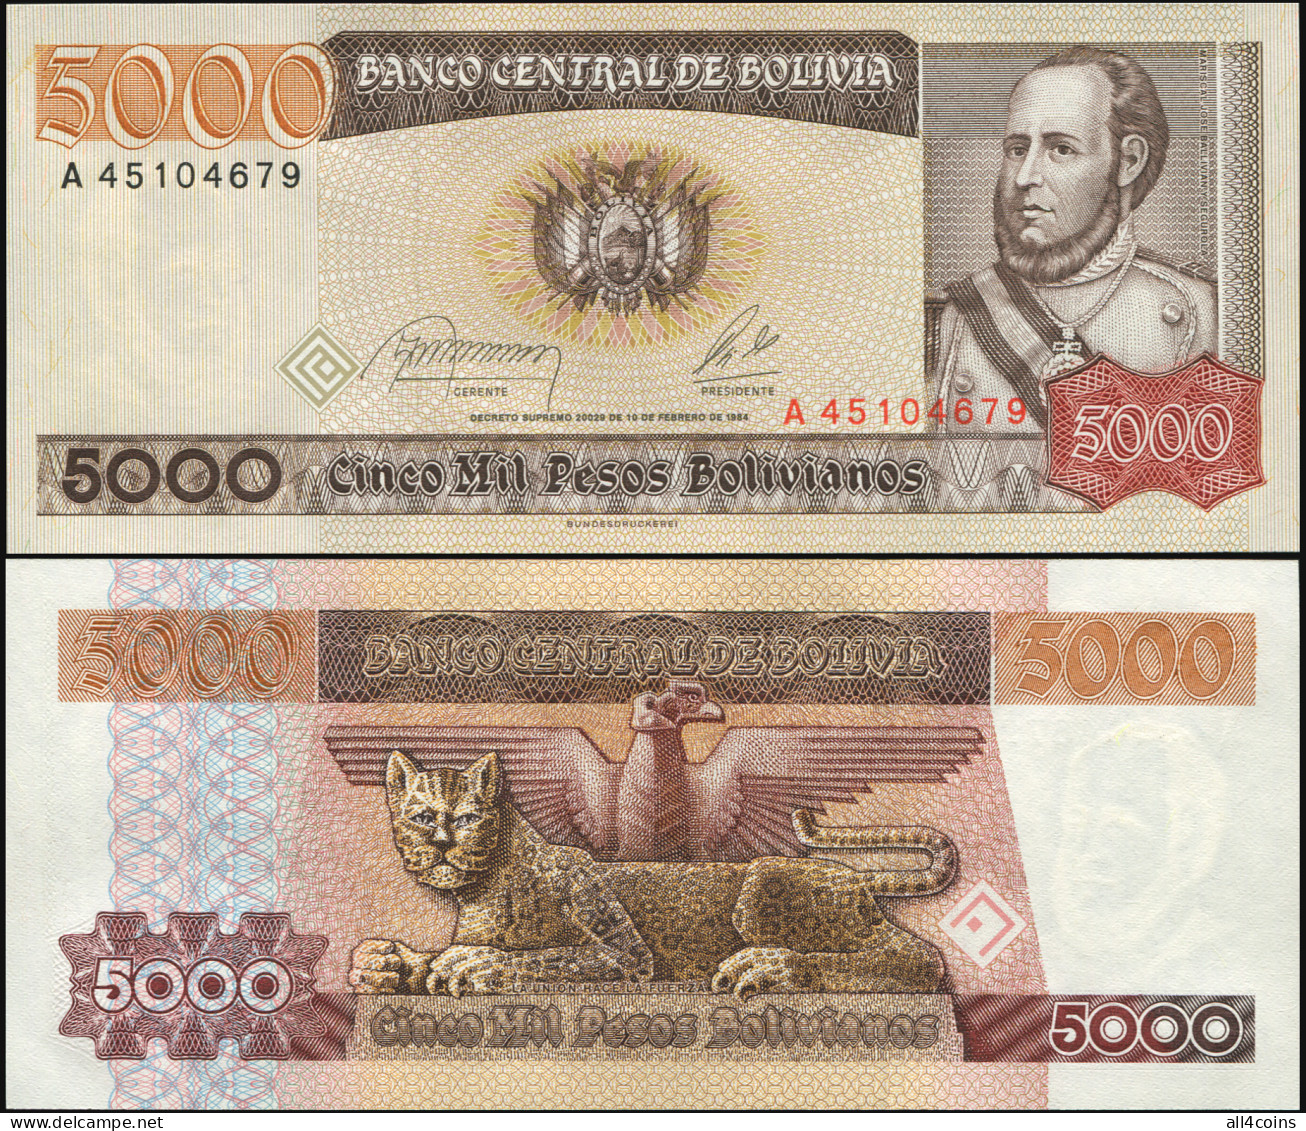 Bolivia 5000 Pesos Bolivianos. L.10.02.1984 Unc. Banknote Cat# P.168a - Bolivia